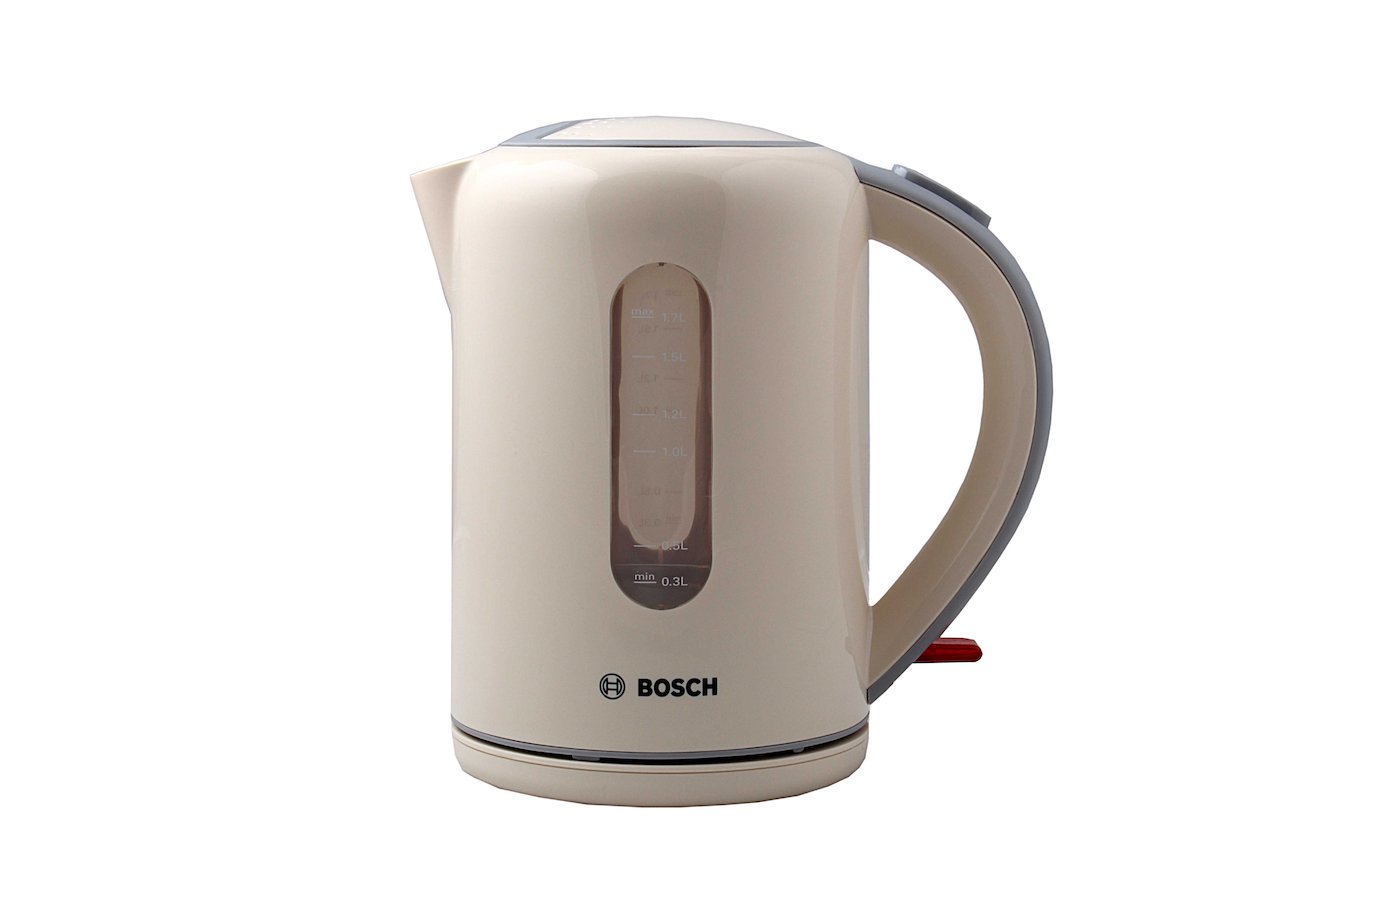 Чайник кремовый. Электрочайник Bosch twk7607. Чайник электрический Bosch TWK 7607 бежевый. Чайник Bosch twk7607, кремовый. Чайник Bosch twk7607 бежевый.